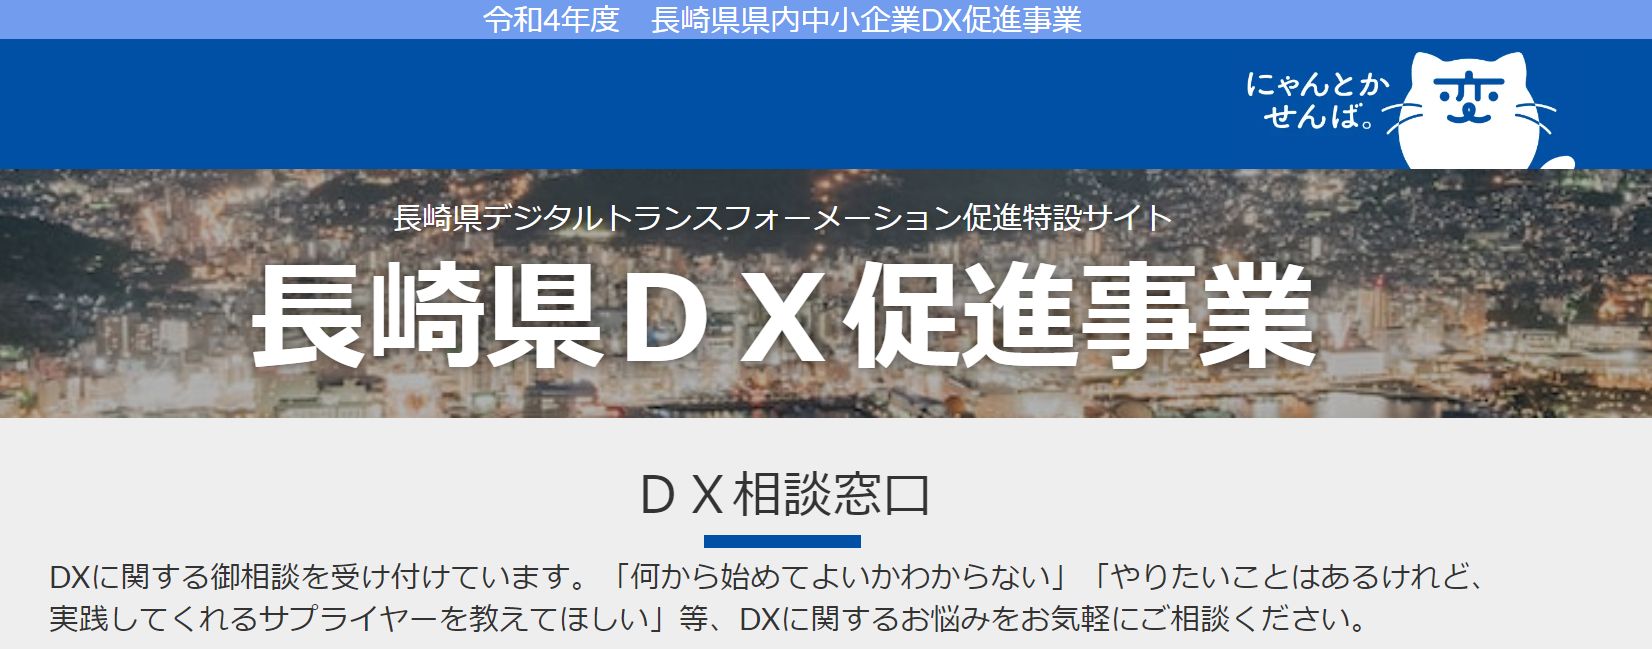 長崎県/県内中小企業DX促進事業